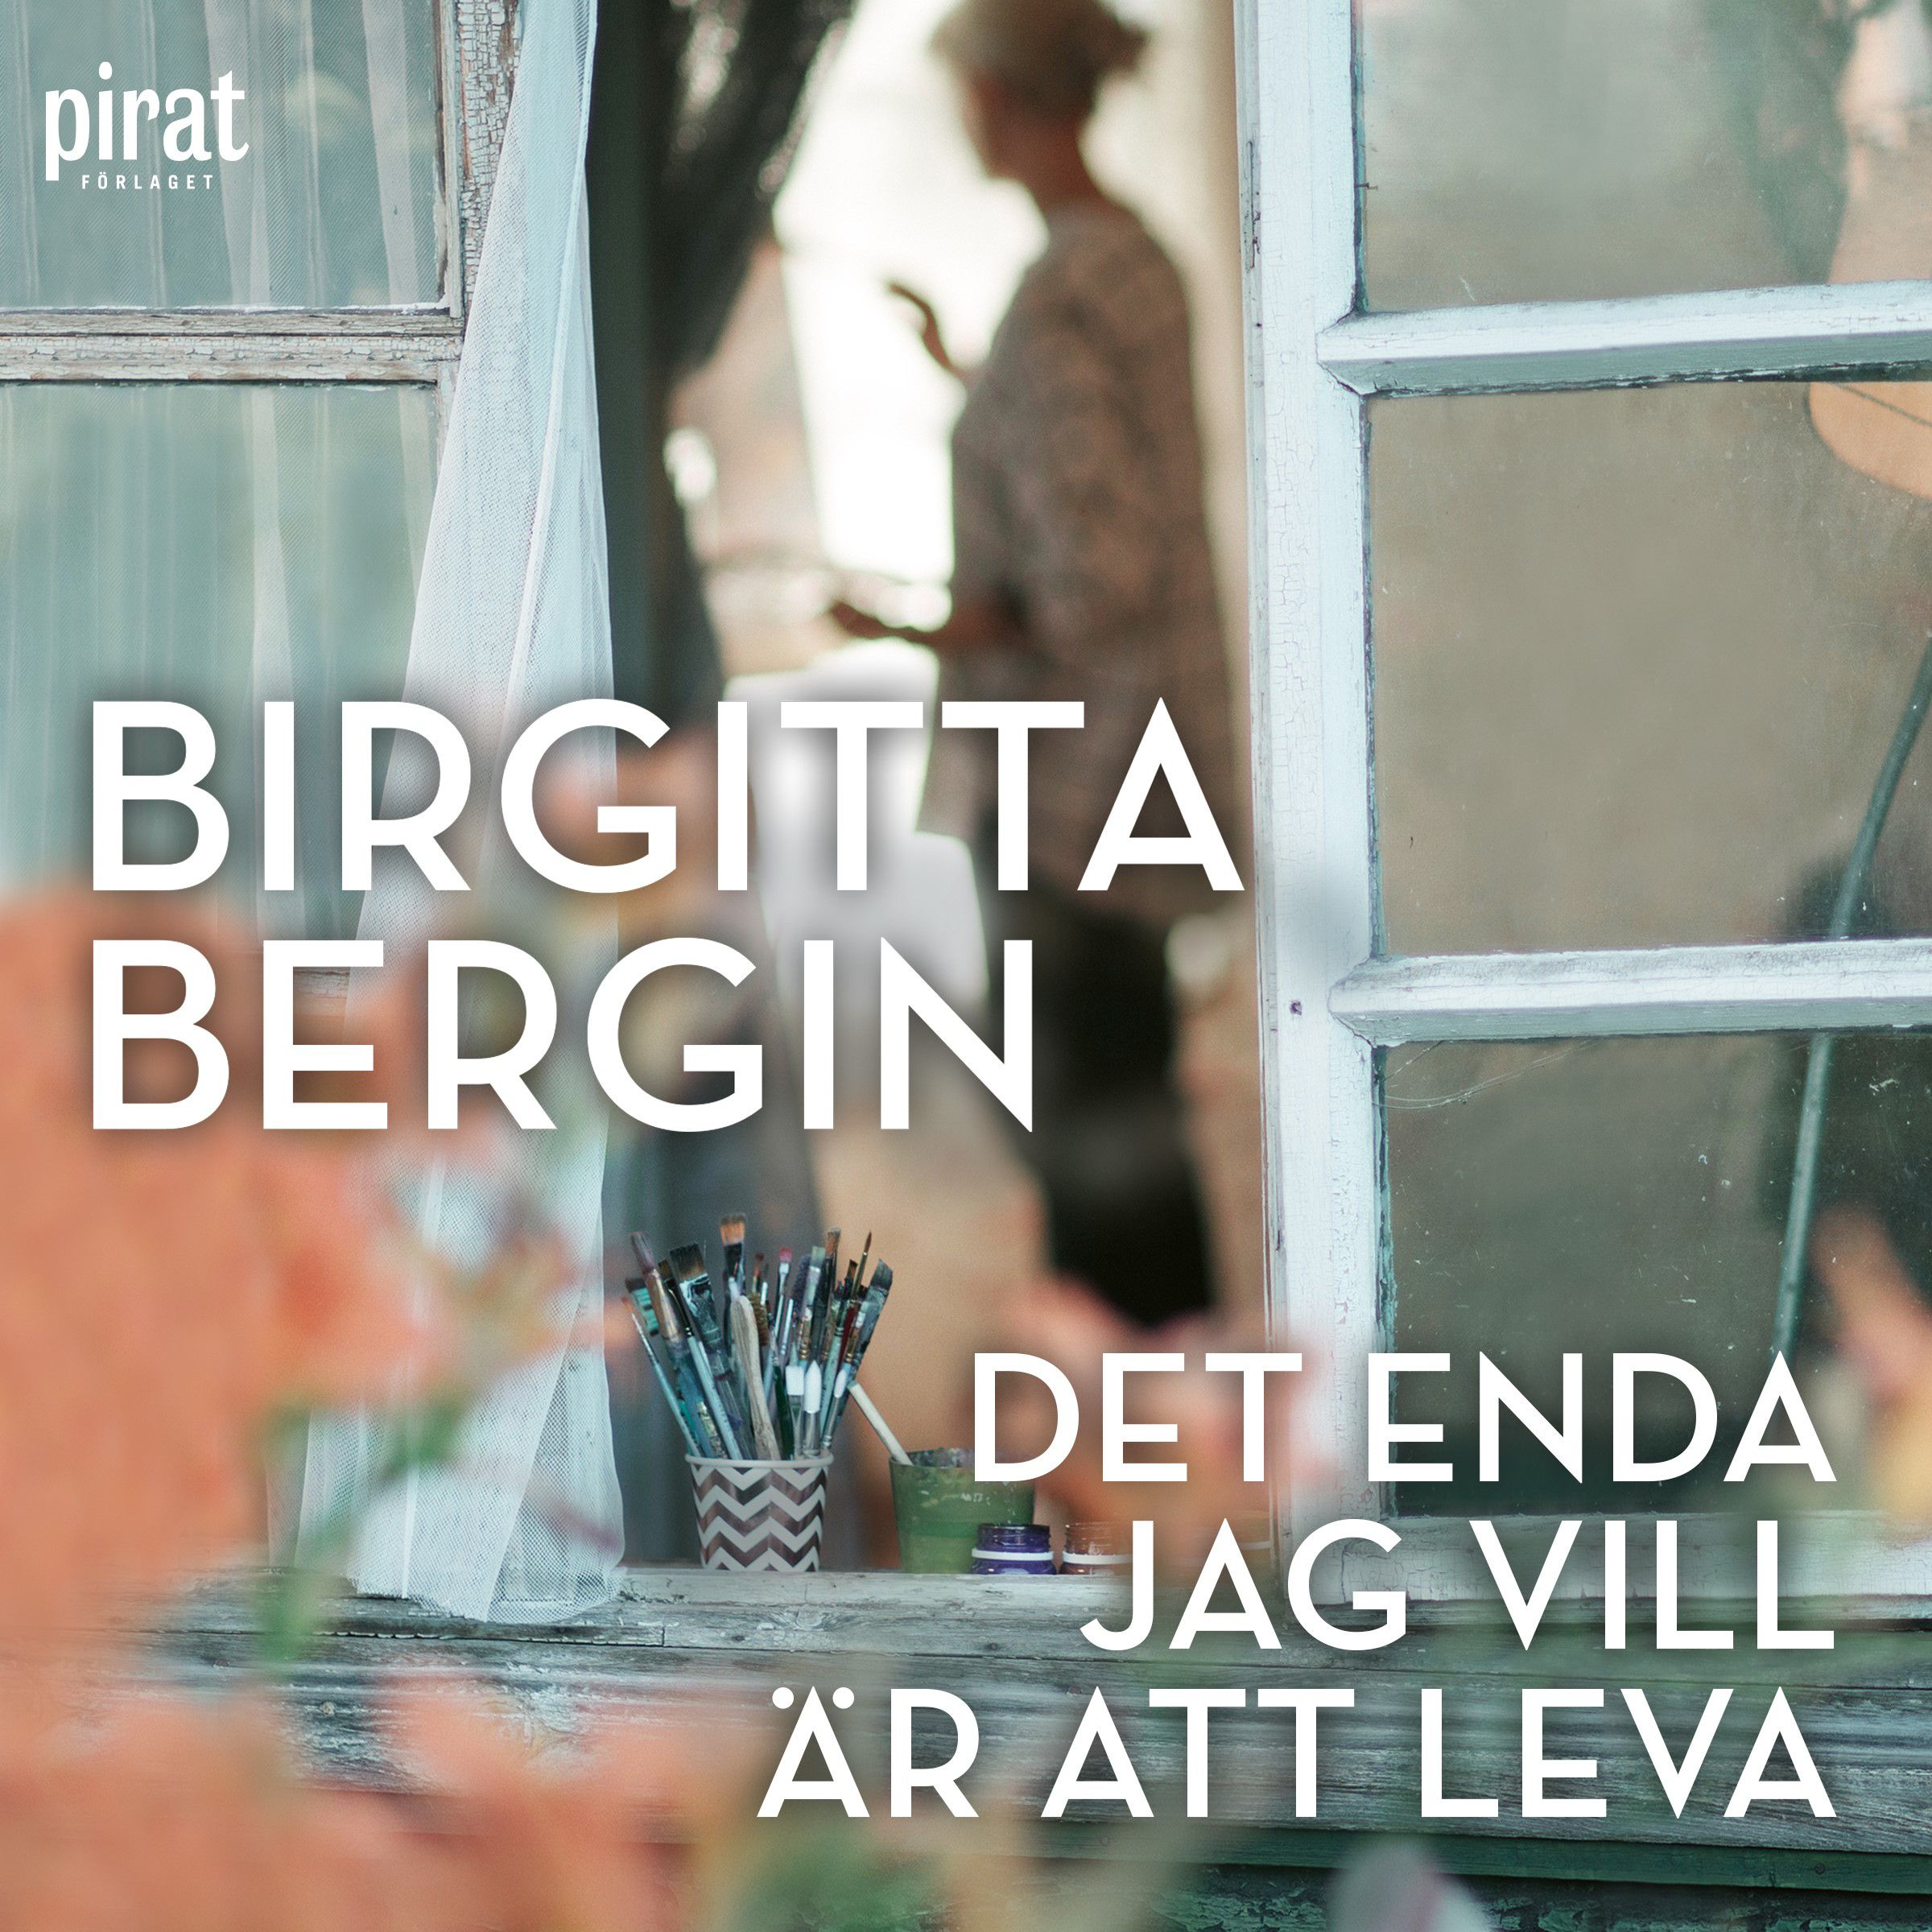 Det enda jag vill är att leva, ljudbok av Birgitta Bergin